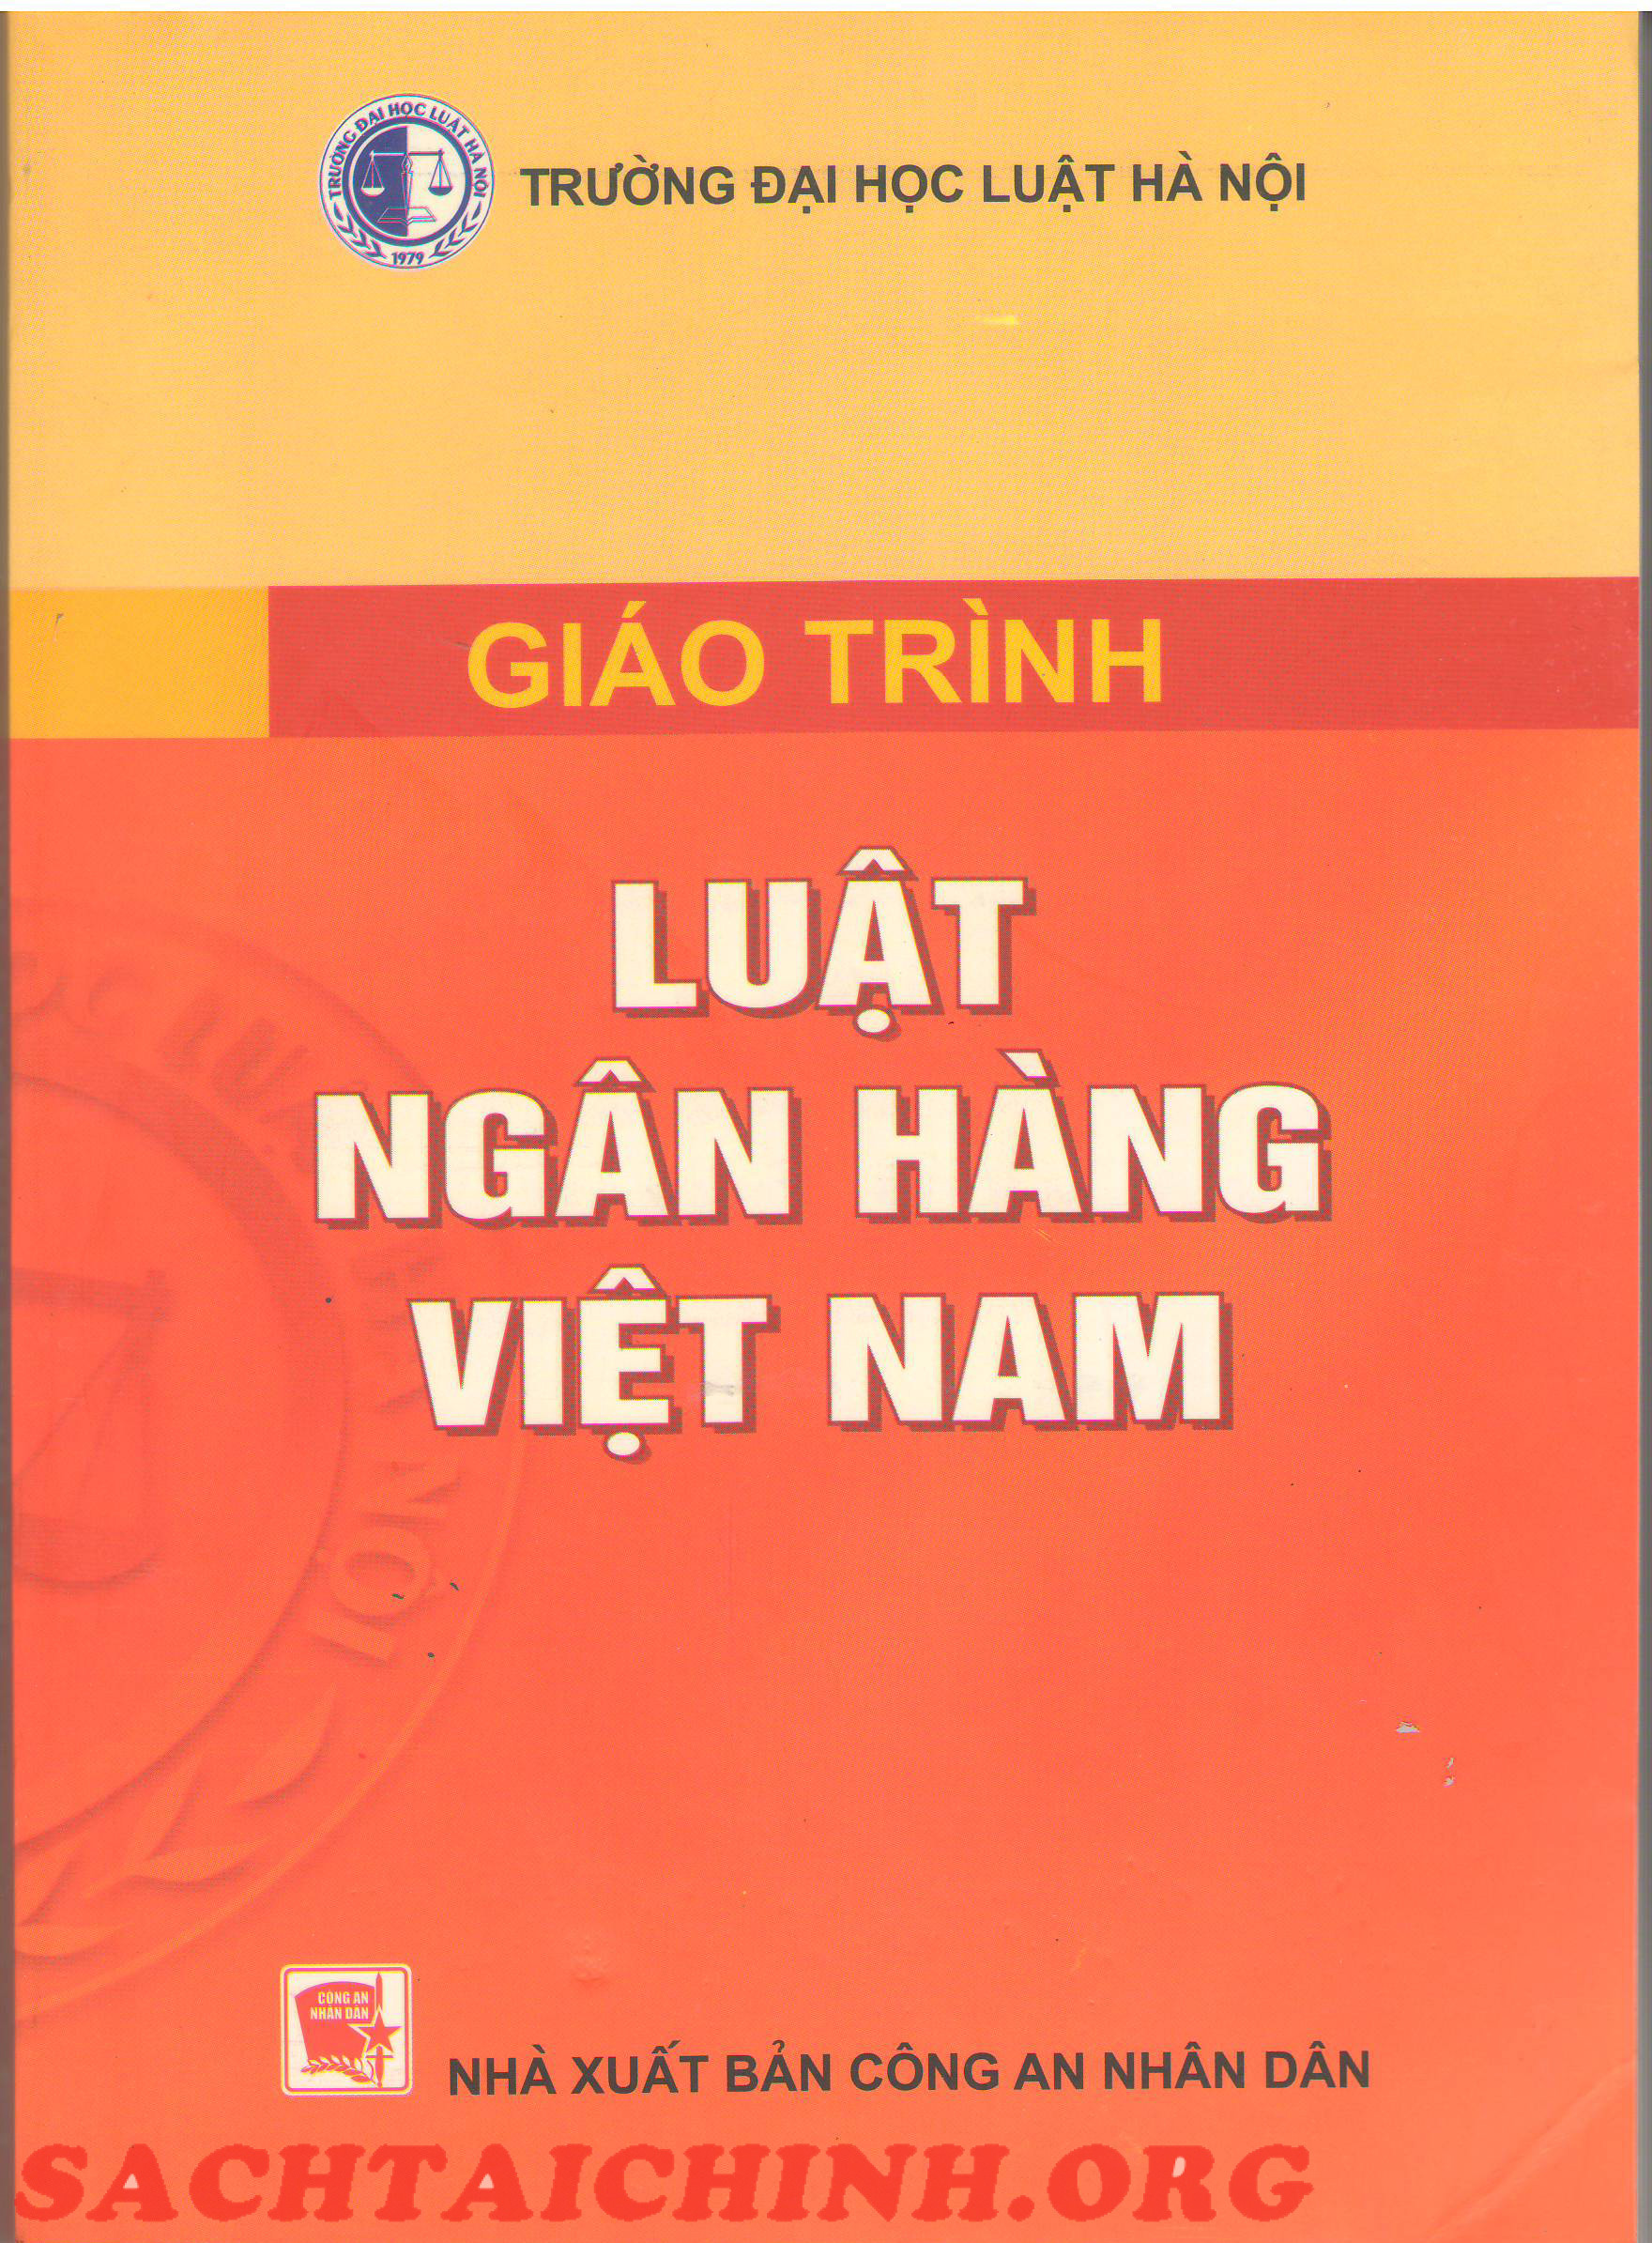 Sách Giáo trình luật ngân hàng Việt Nam